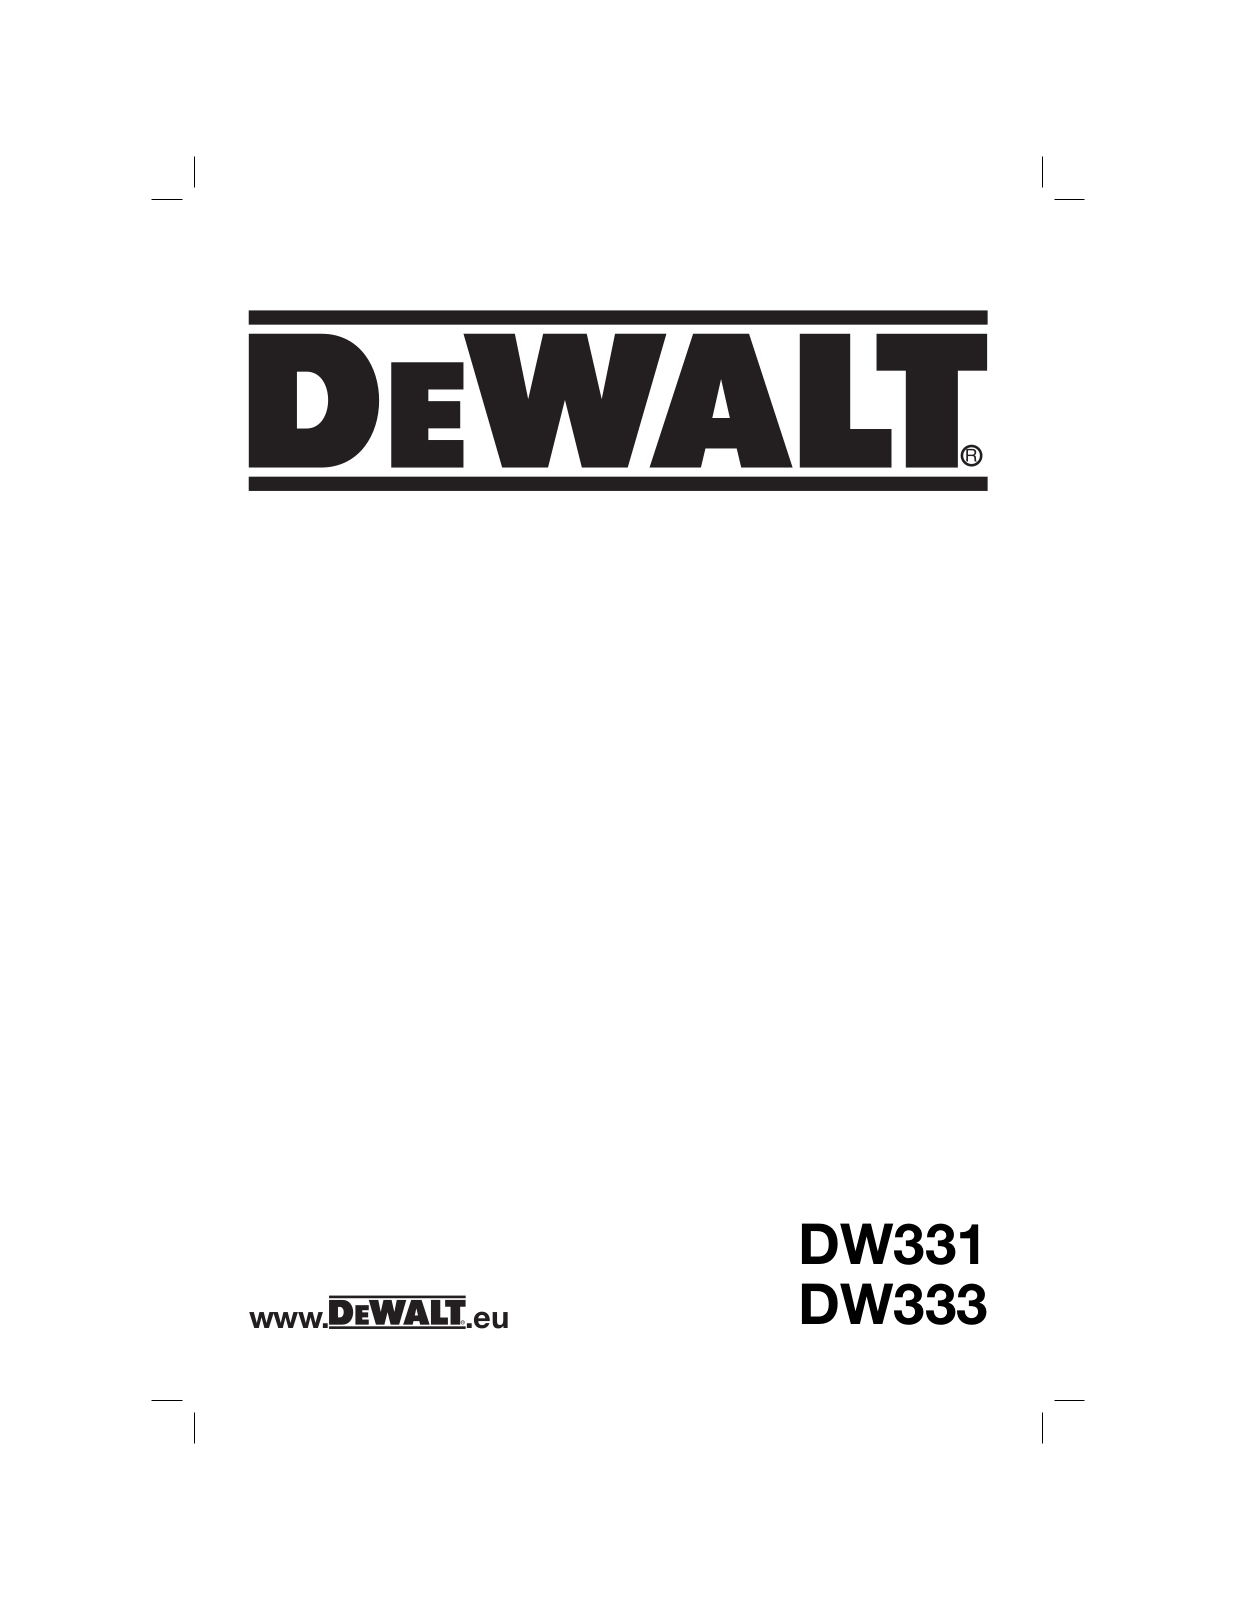 DeWalt DW331, DW333 User Manual